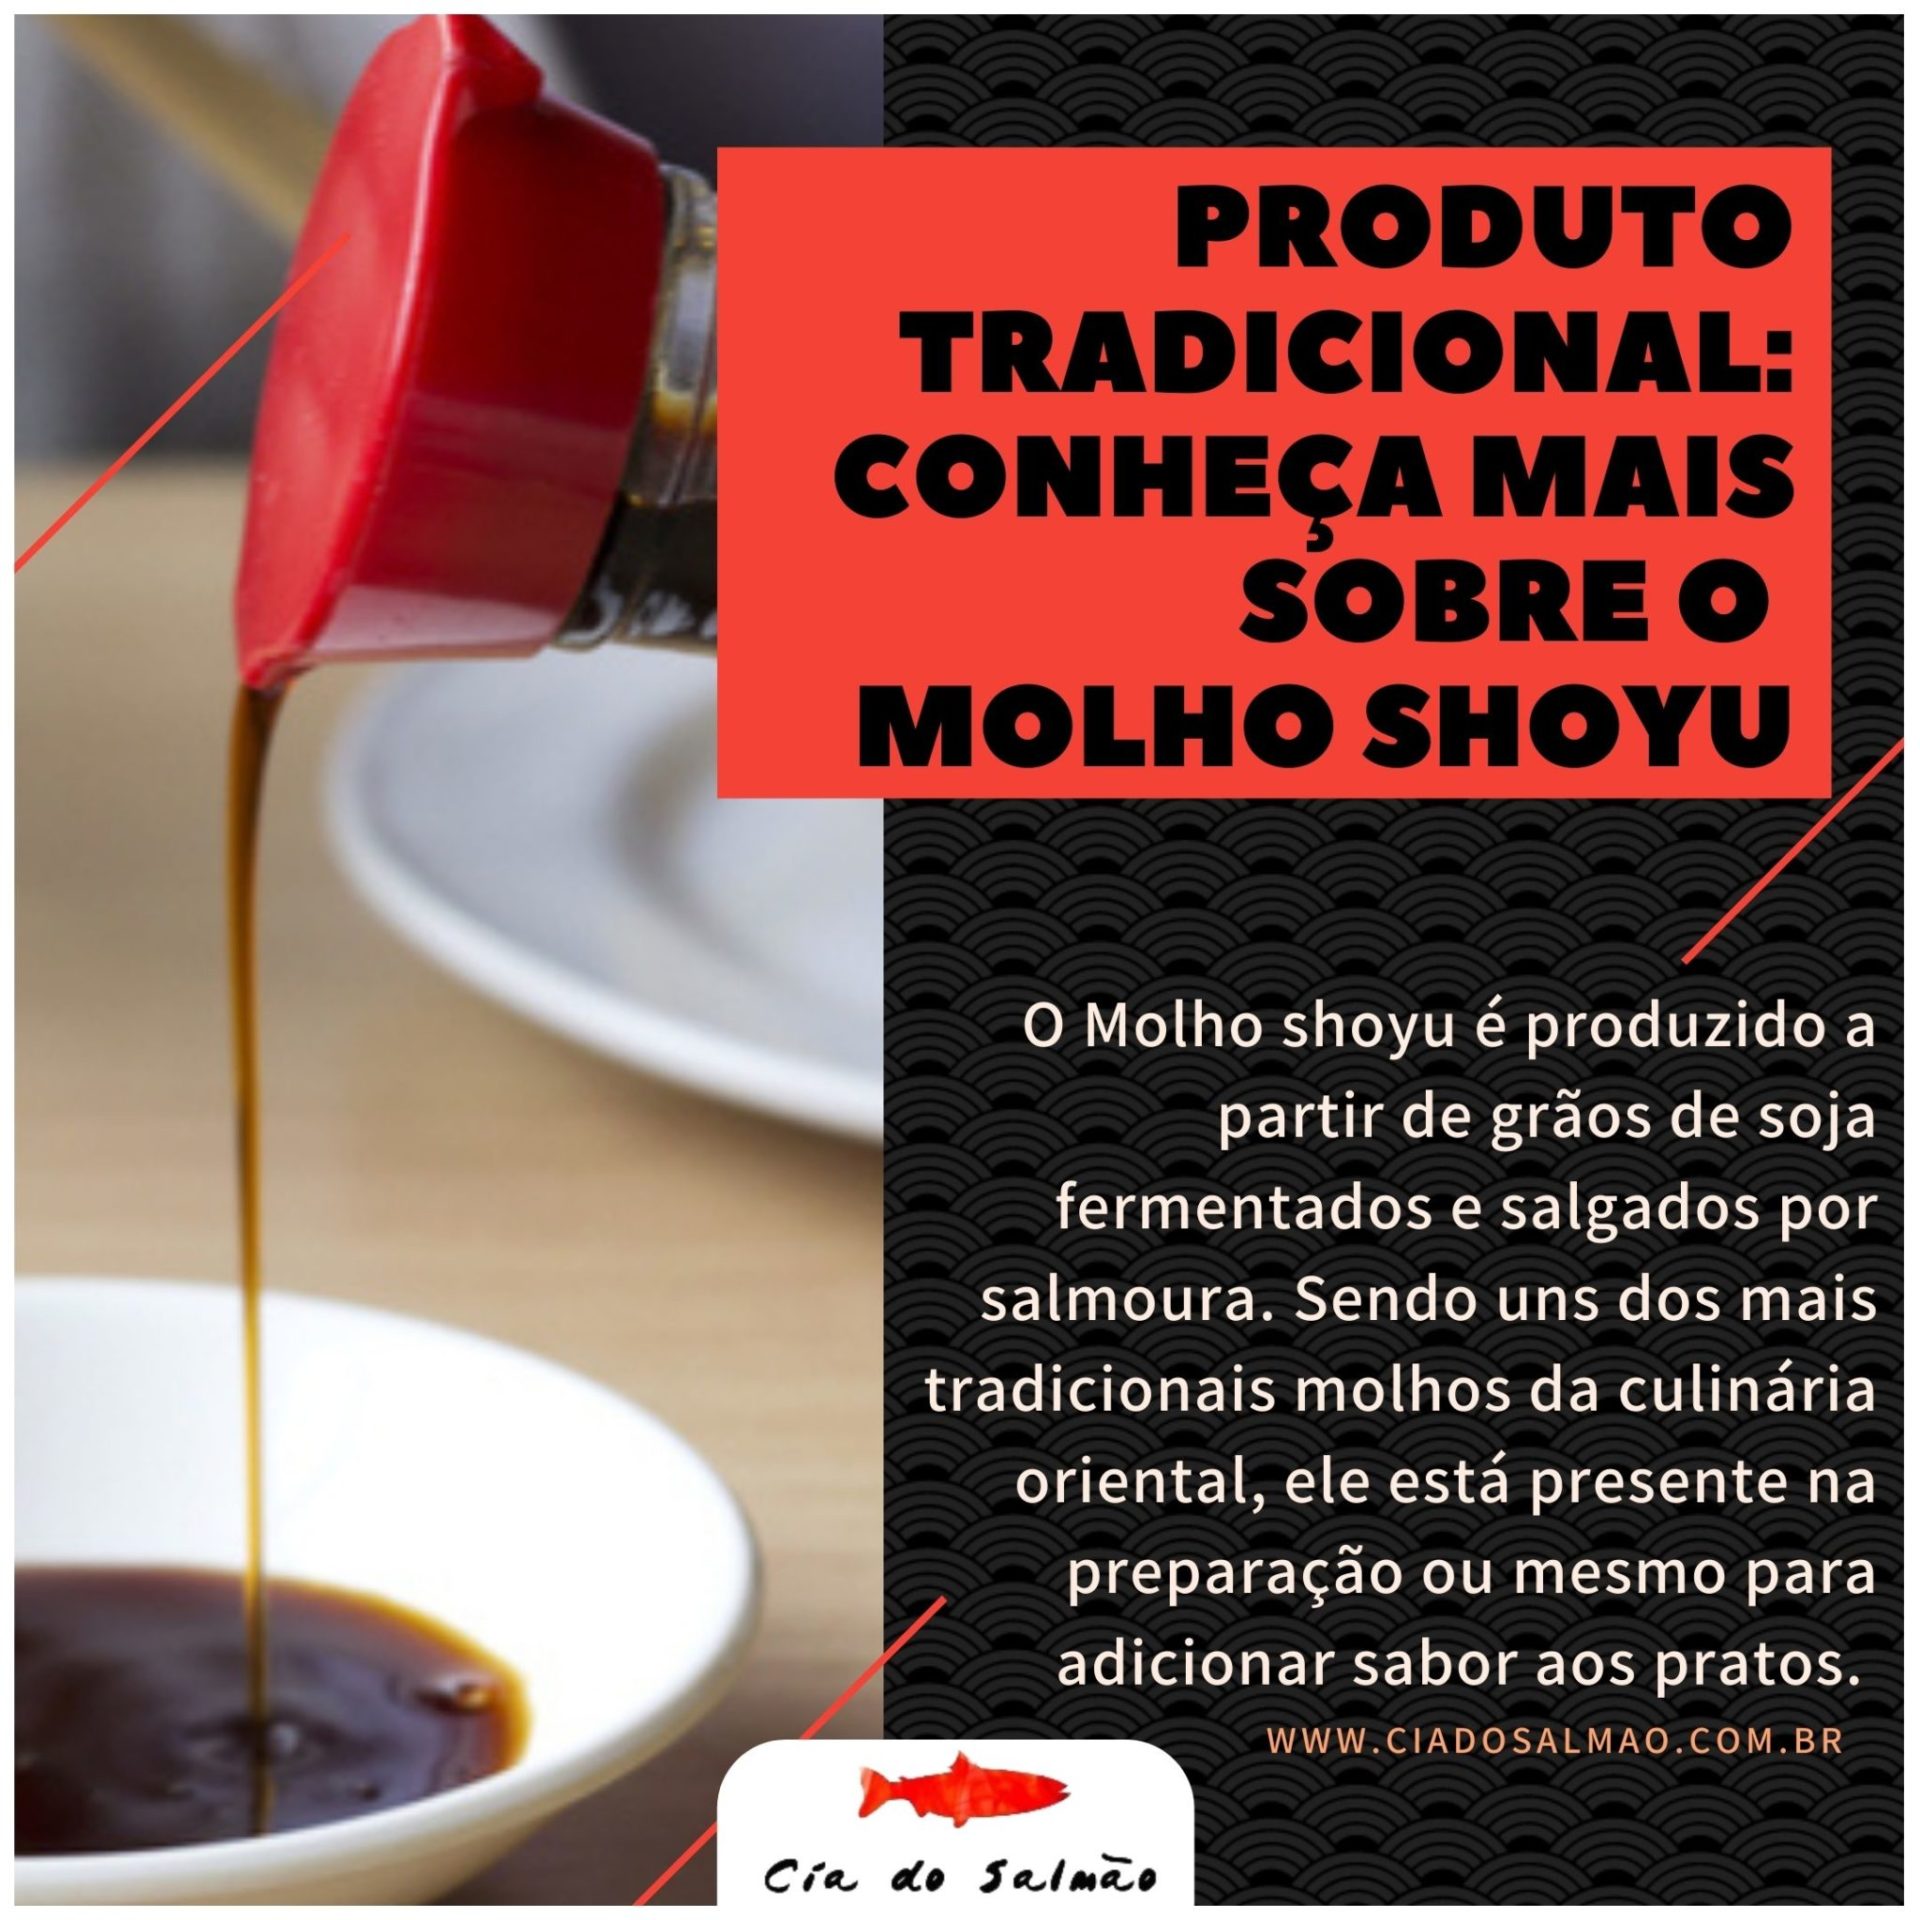 Produto tradicional: Conheça mais sobre o molho Shoyu